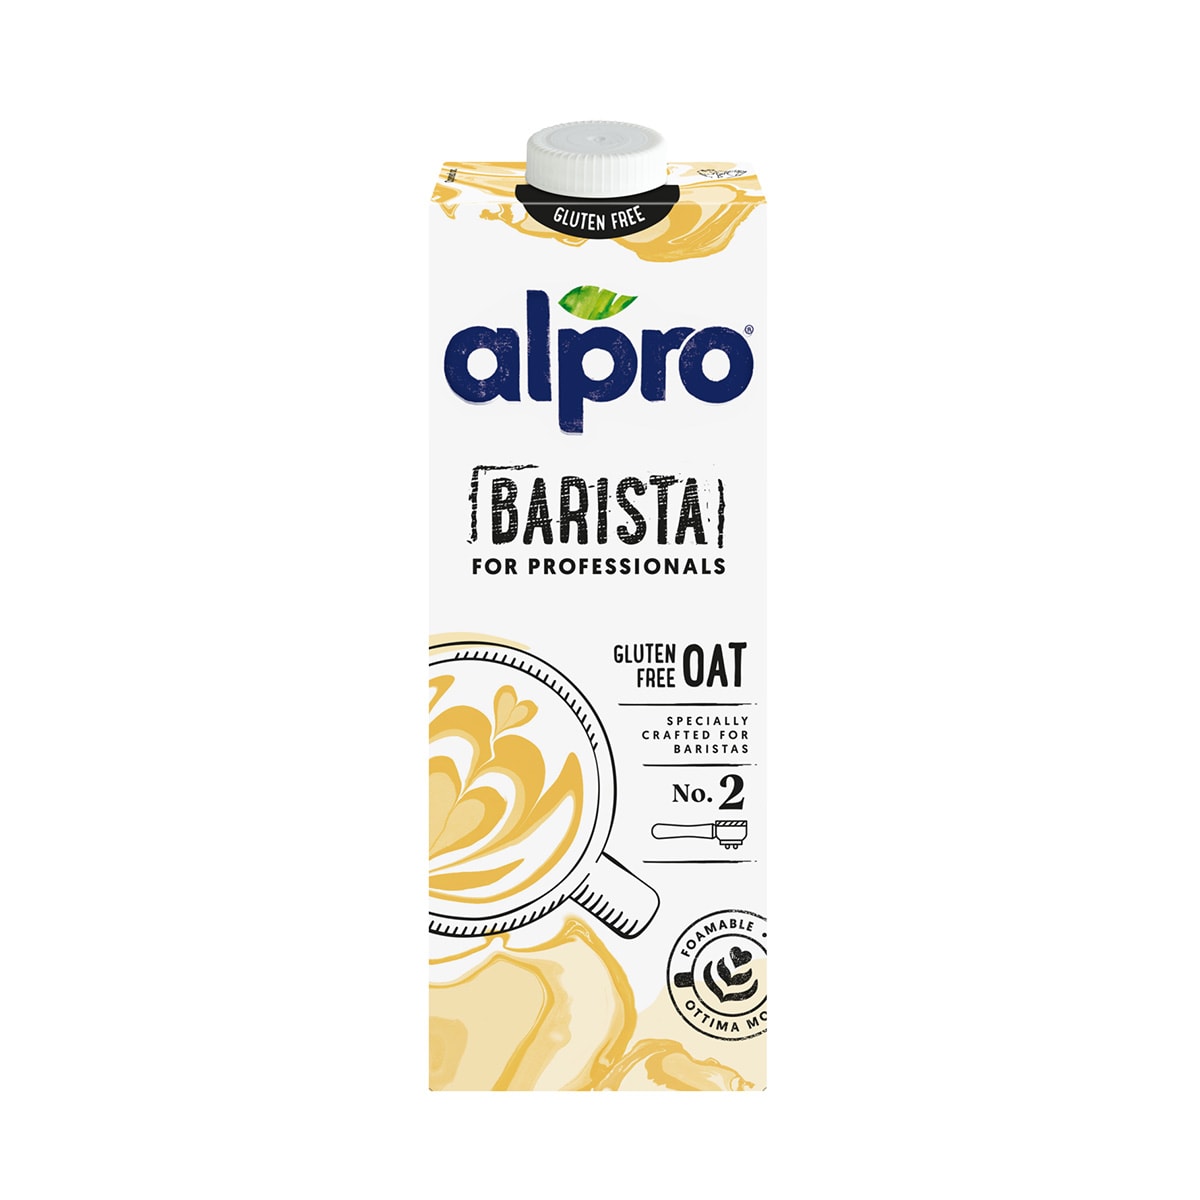 Alpro Organic Oat Milk for Professionals